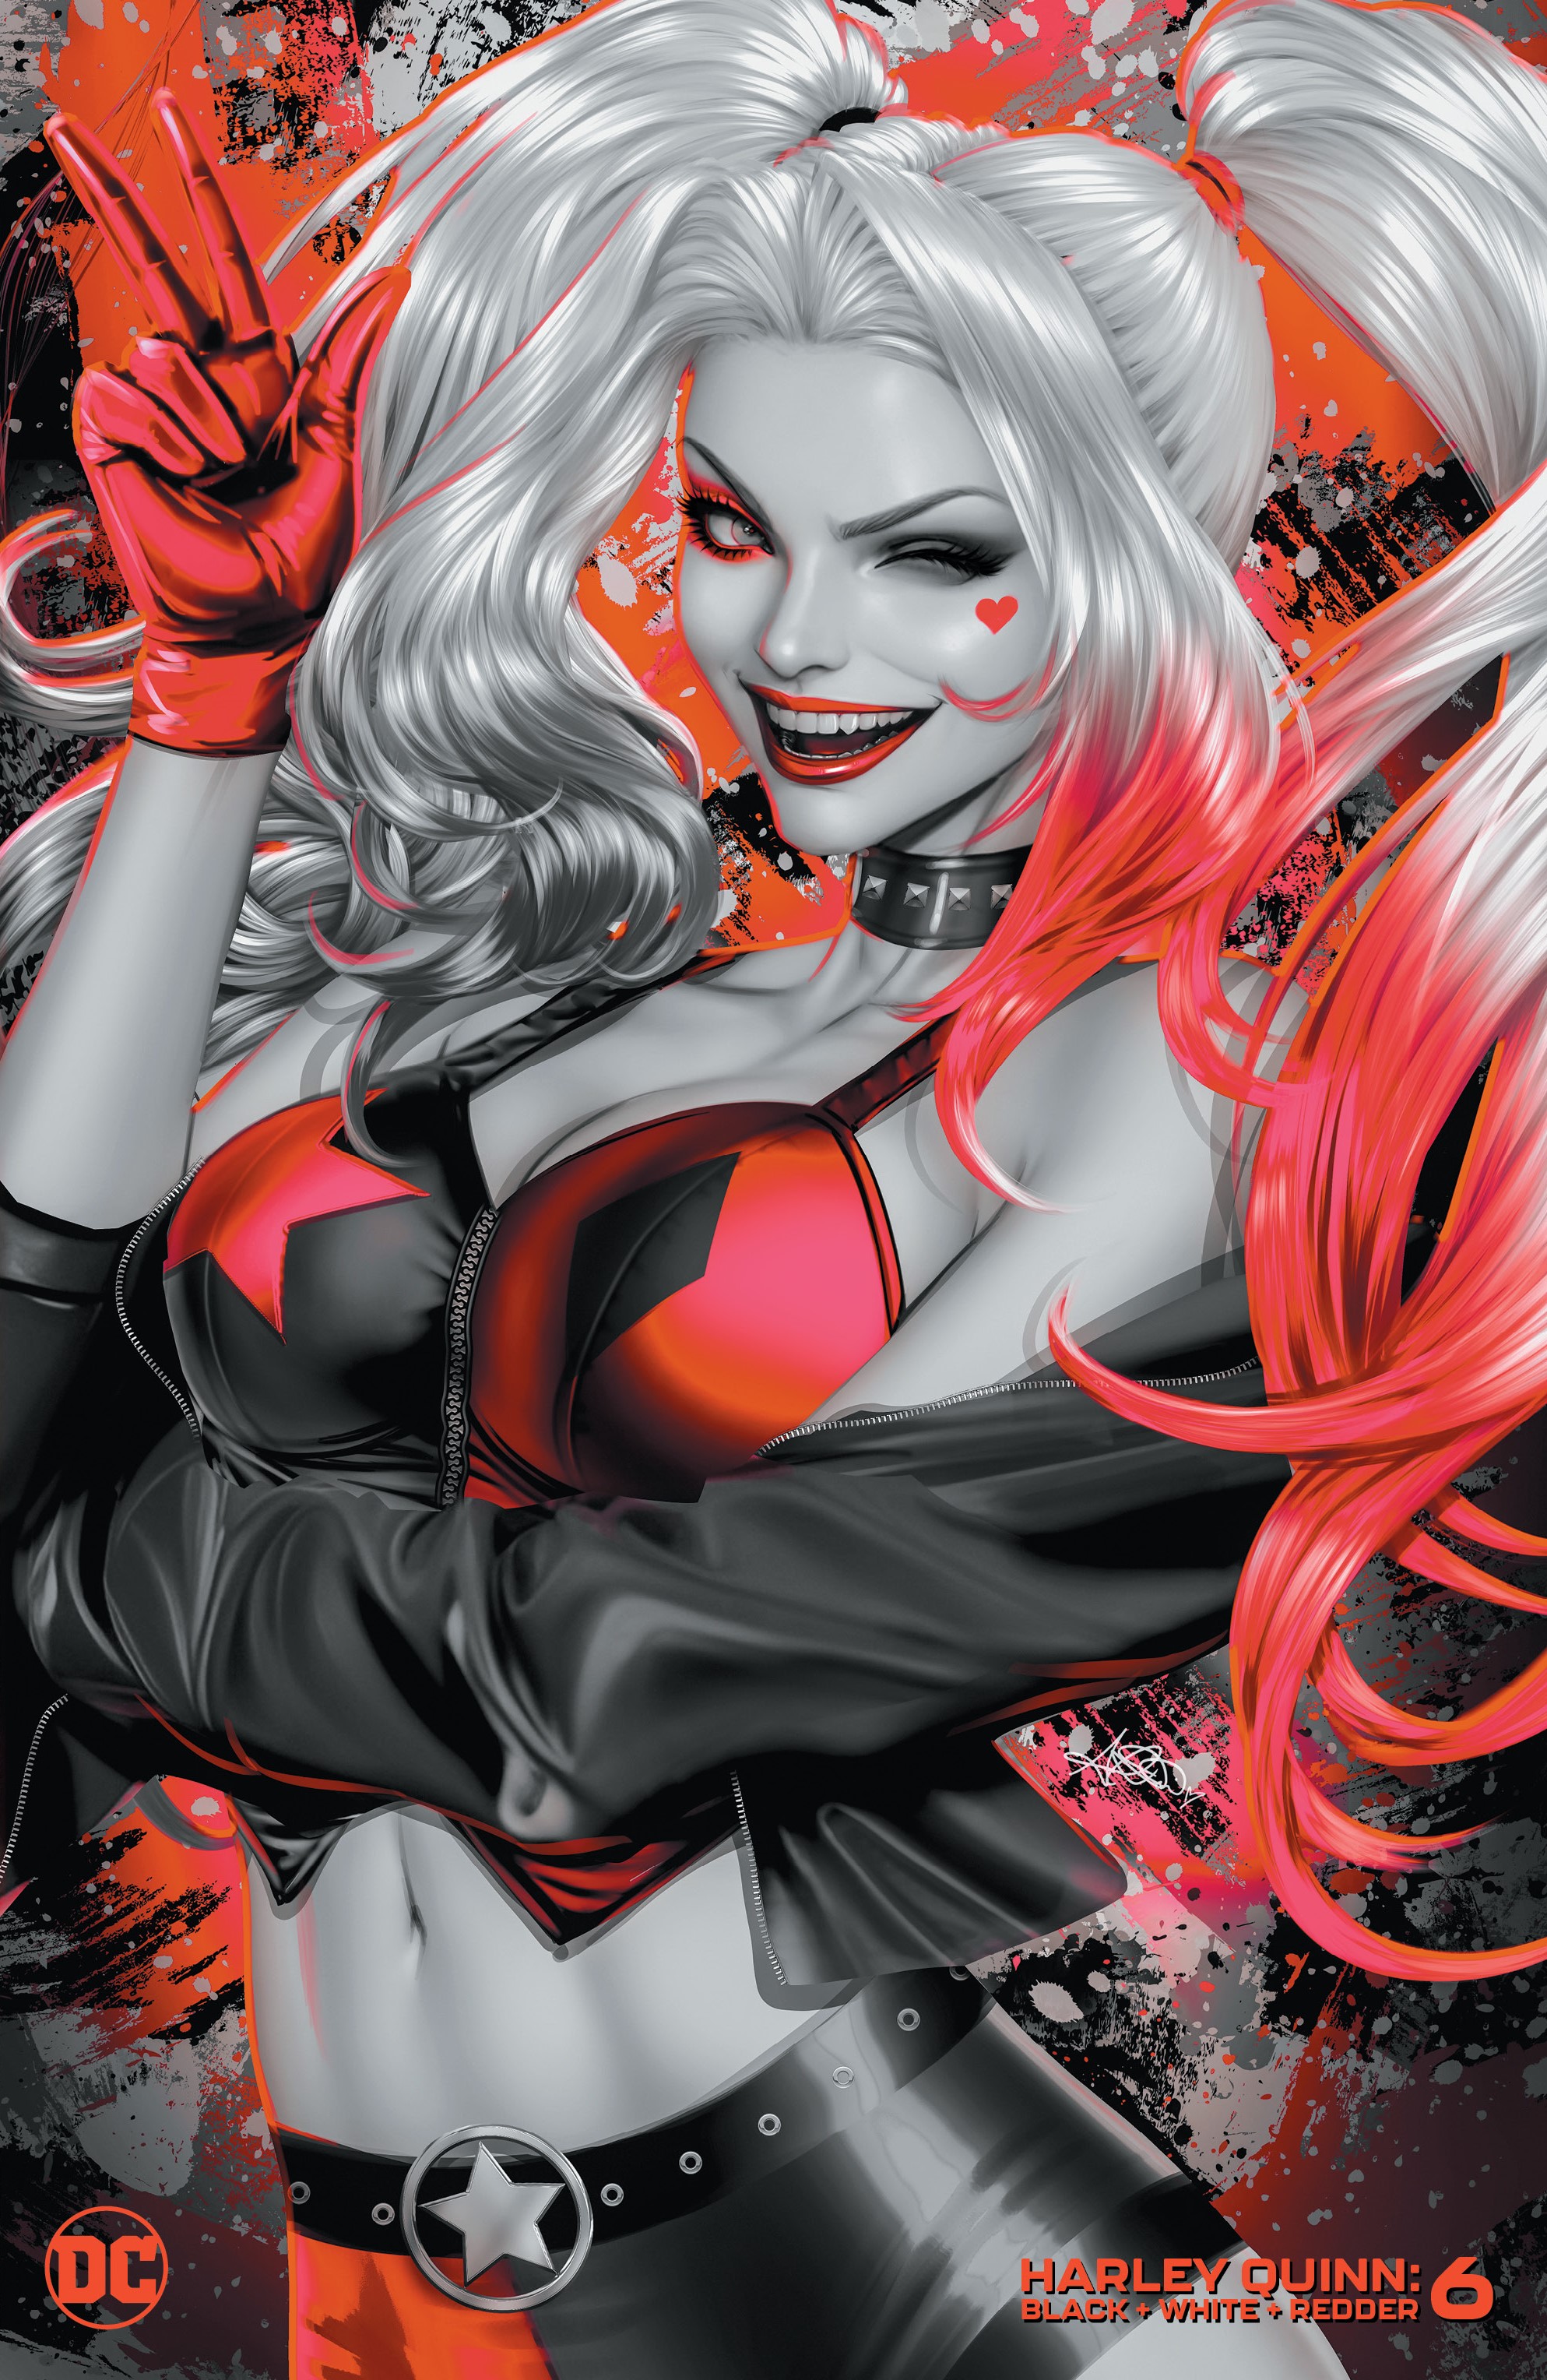 Harley Quinn Black White Redder #6 Cover C Ariel Diaz Variant (Of 6)